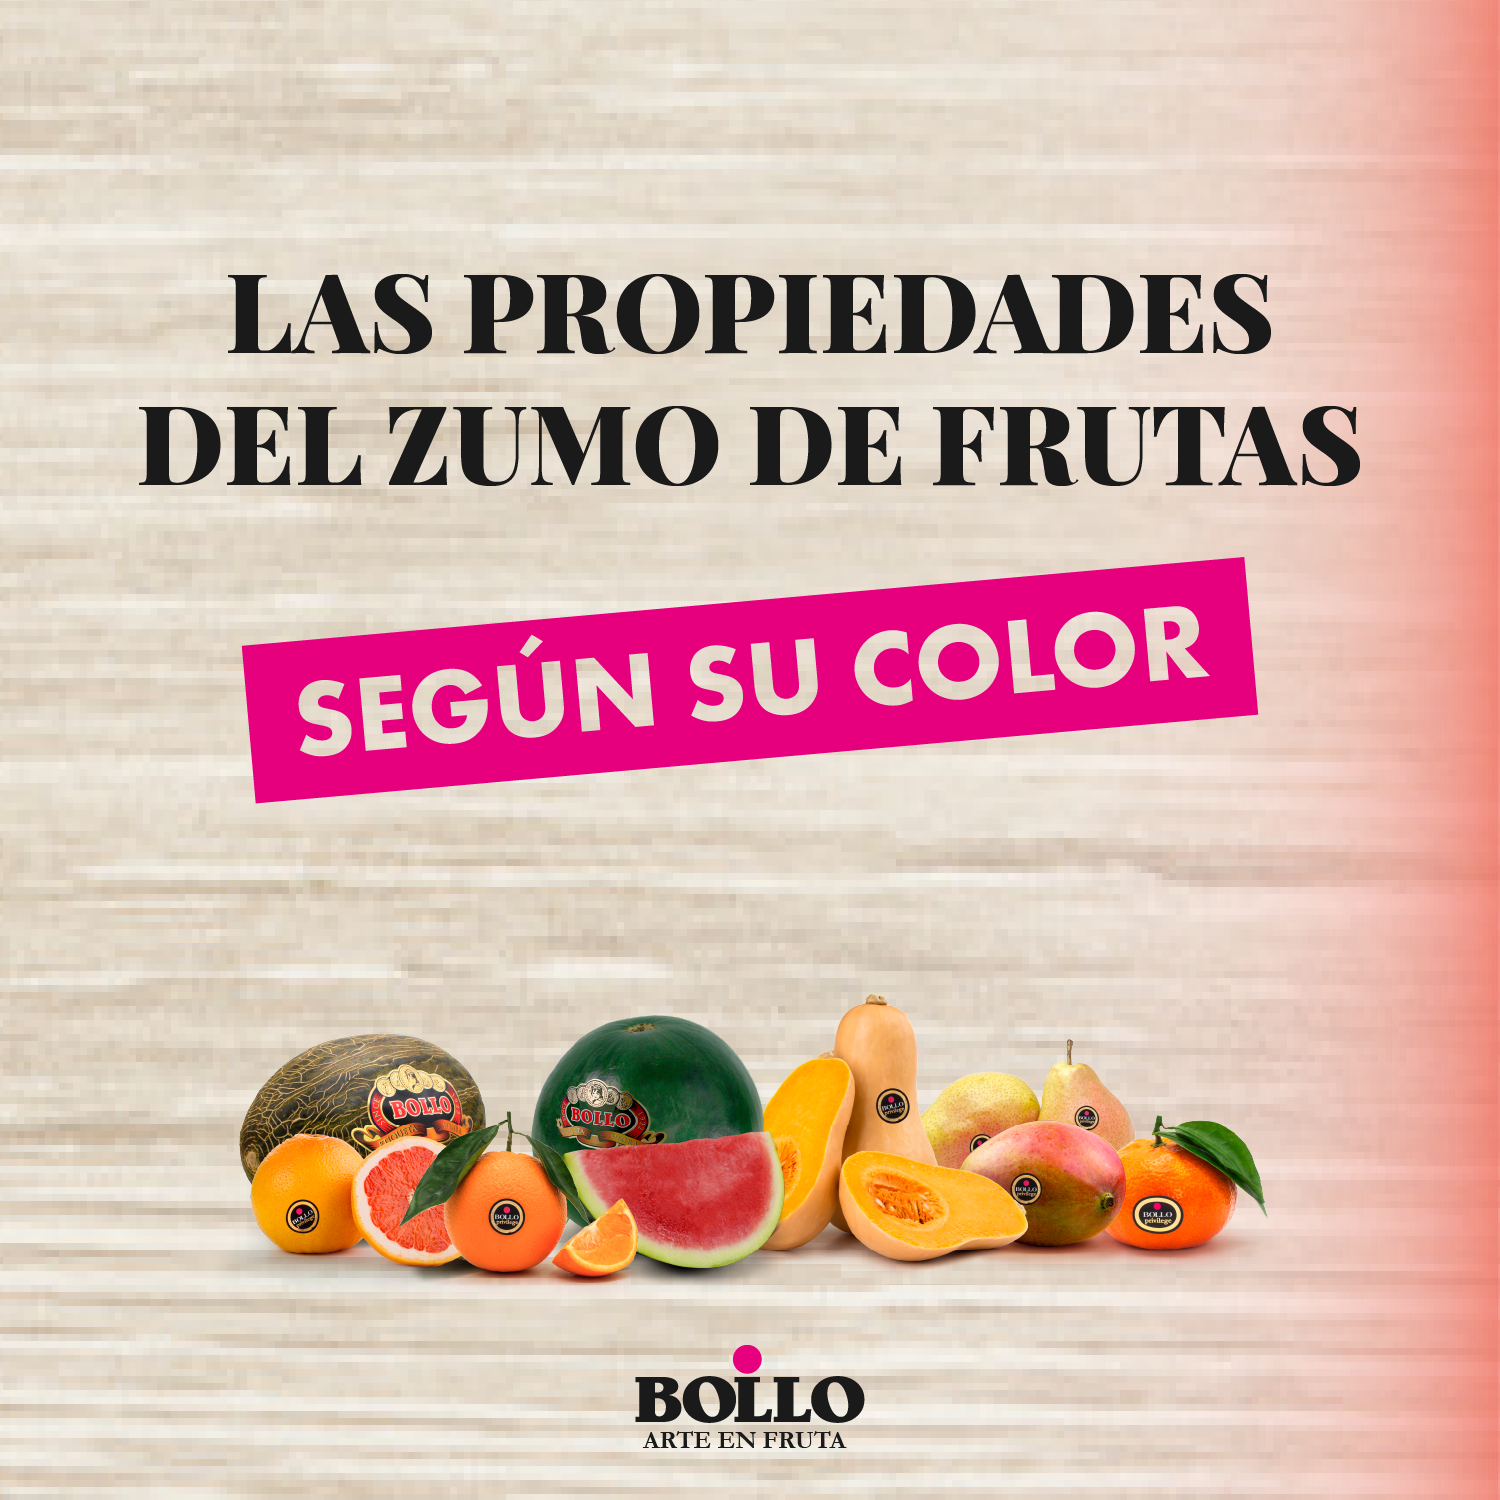 Las propiedades del zumo de frutas según el color.